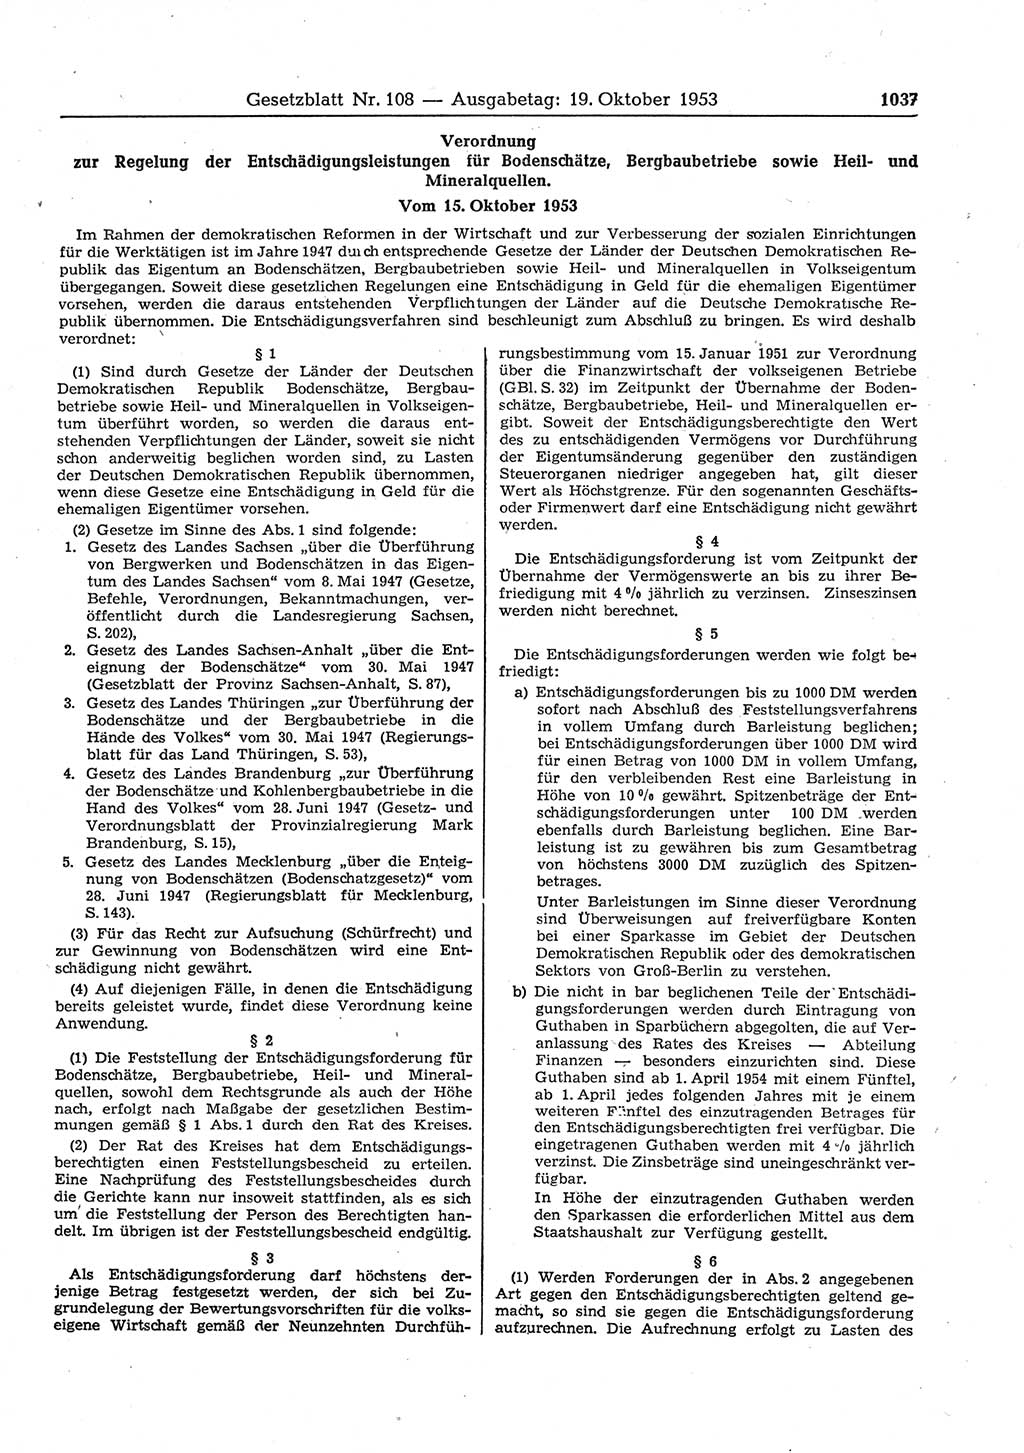 Gesetzblatt (GBl.) der Deutschen Demokratischen Republik (DDR) 1953, Seite 1037 (GBl. DDR 1953, S. 1037)